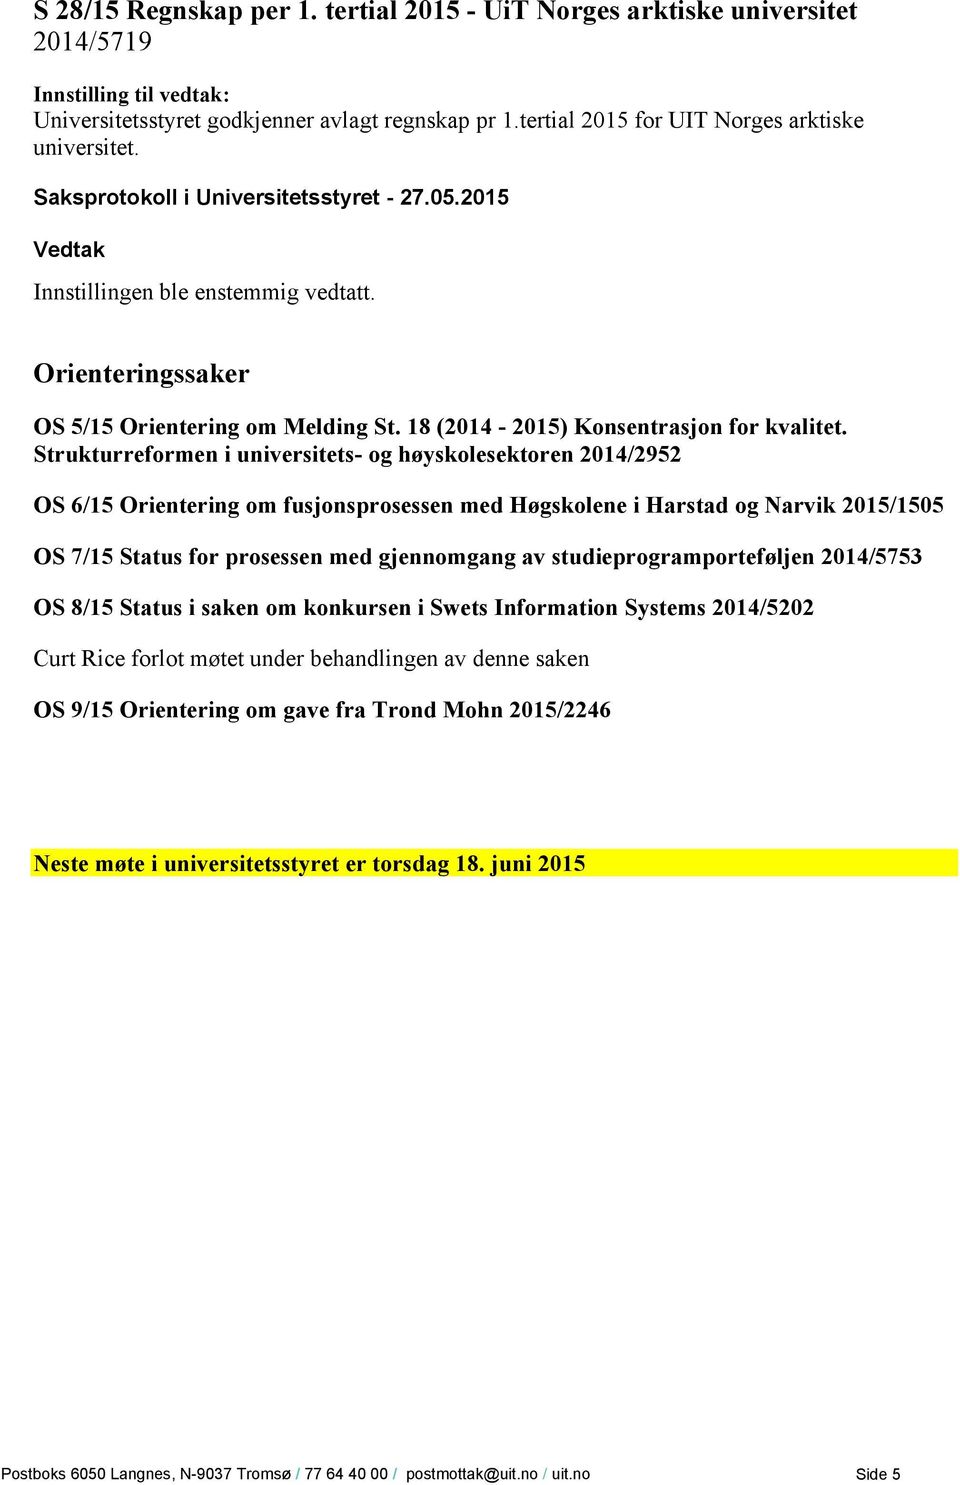 Strukturreformen i universitets- og høyskolesektoren 2014/2952 OS 6/15 Orientering om fusjonsprosessen med Høgskolene i Harstad og Narvik 2015/1505 OS 7/15 Status for prosessen med gjennomgang av